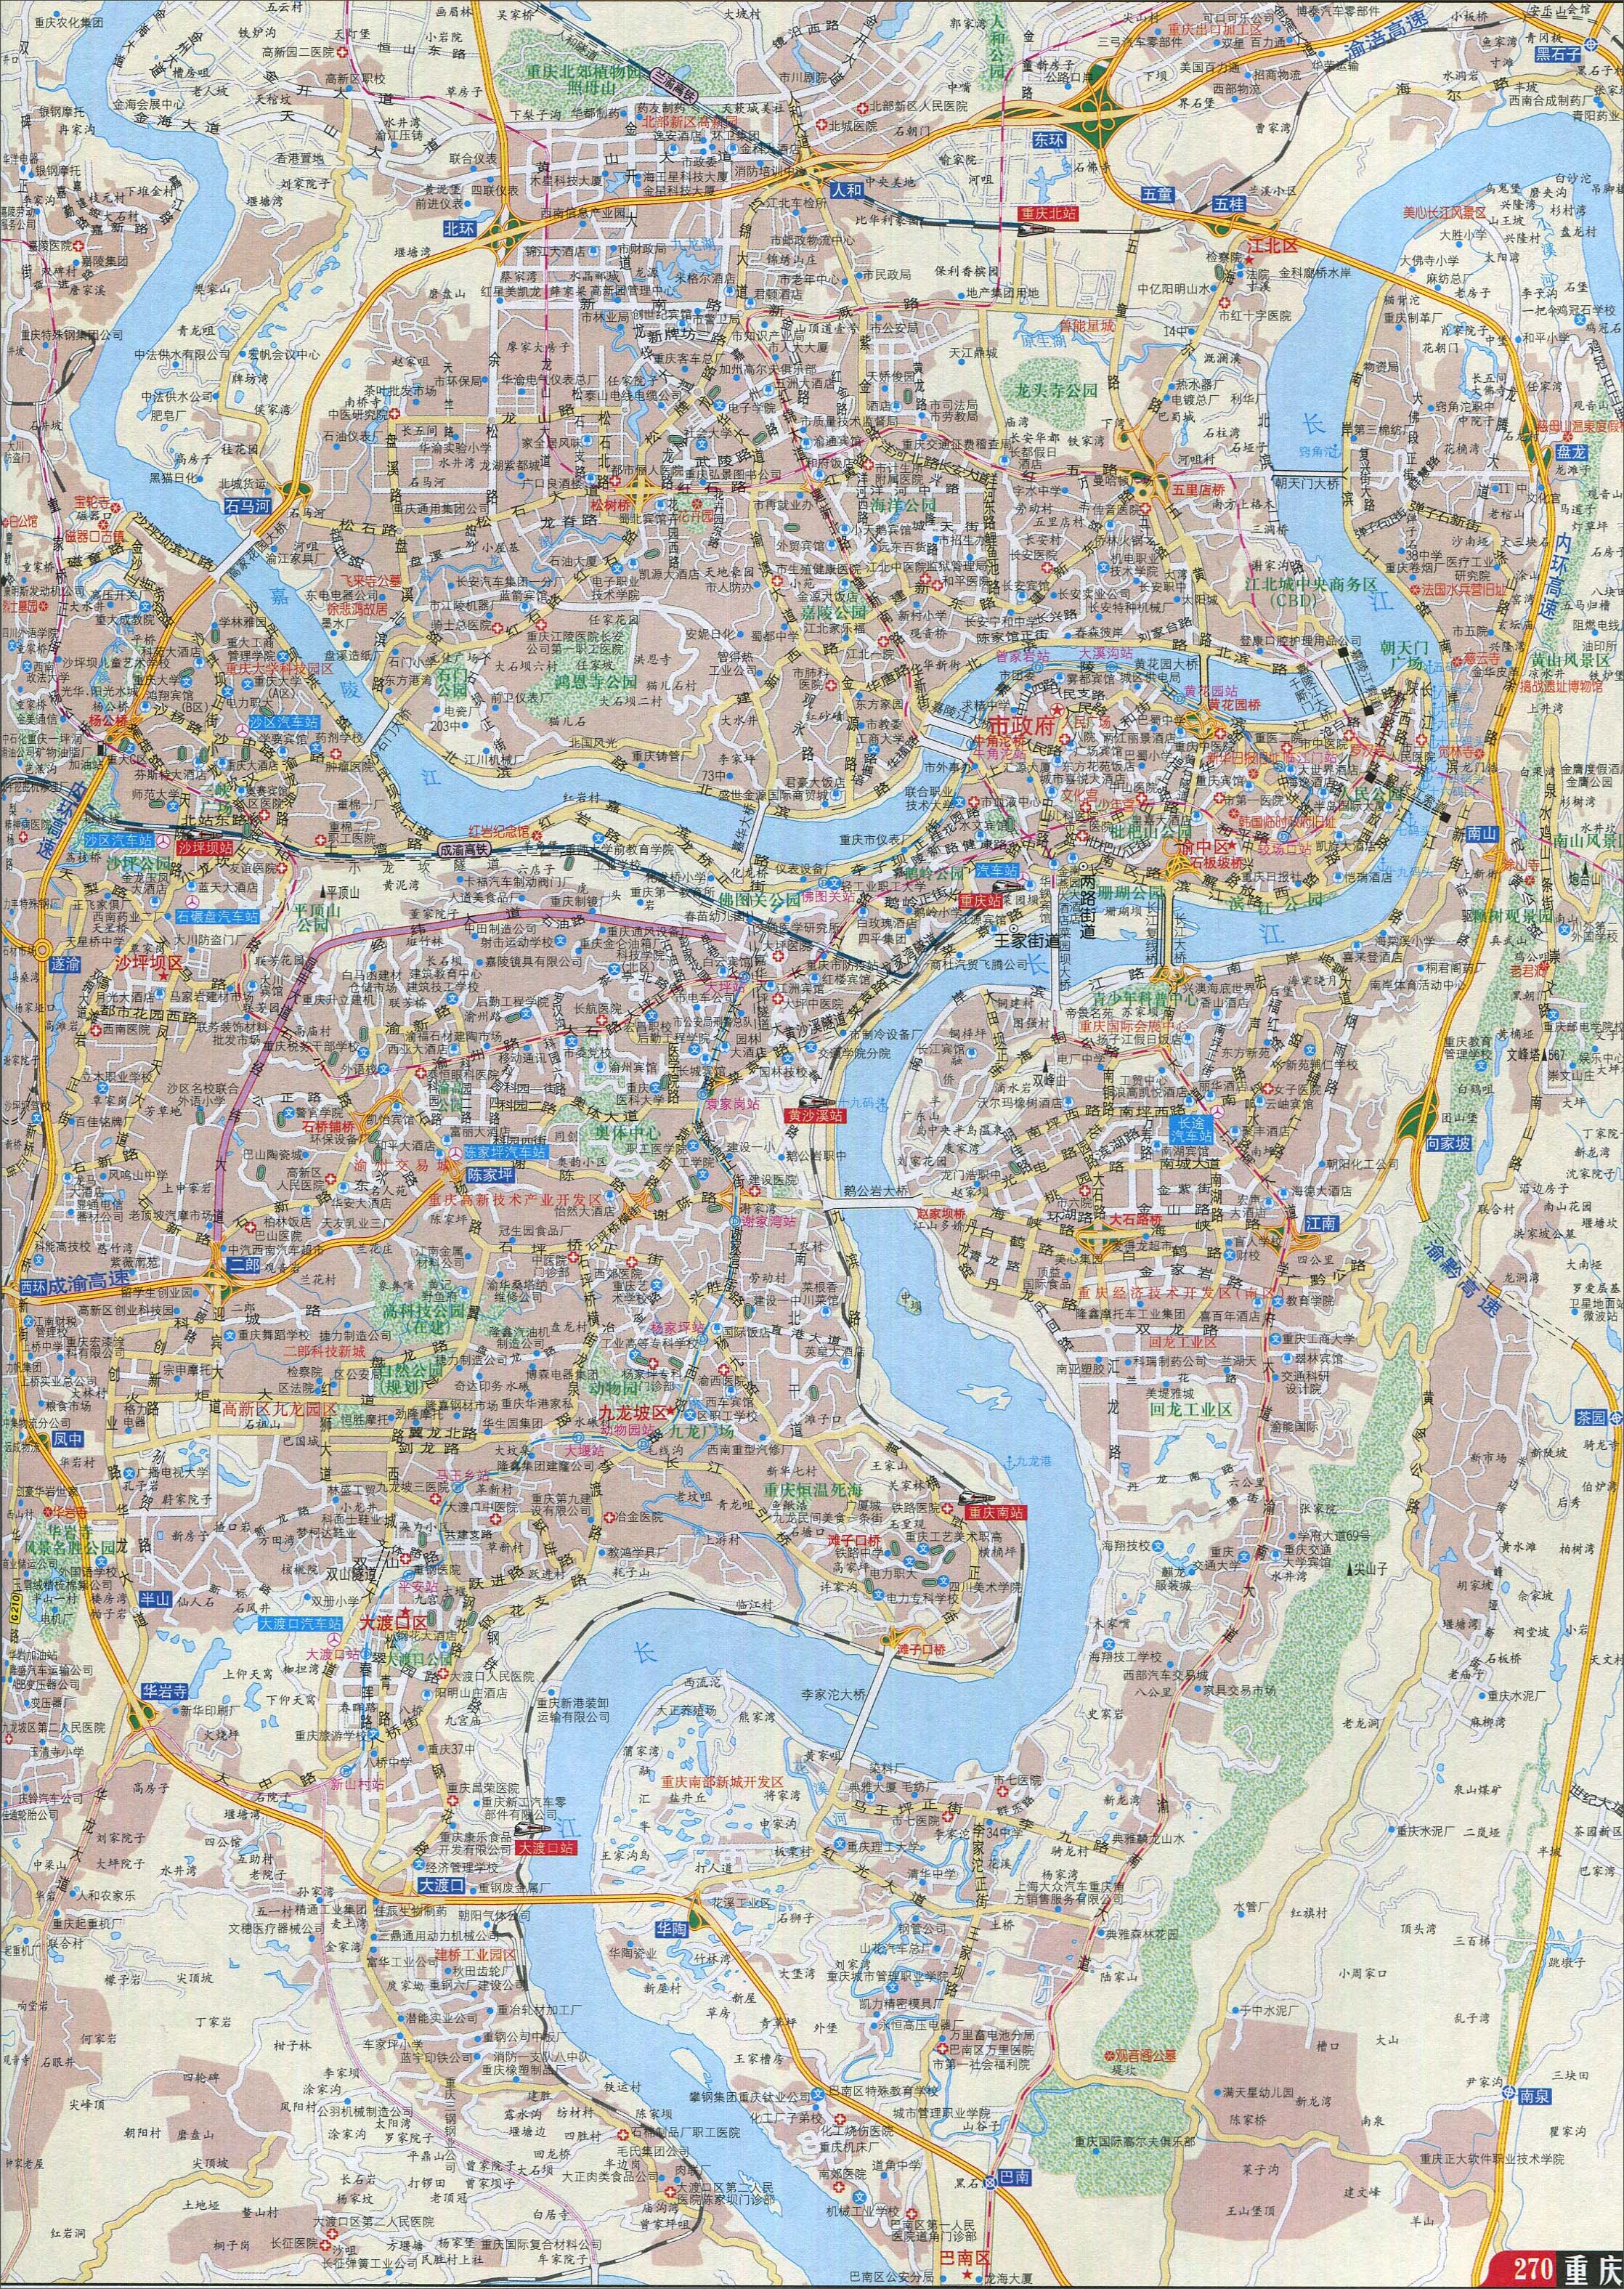 重庆市区旅游景点地图内容|重庆市区旅游景点地图版面设计图片